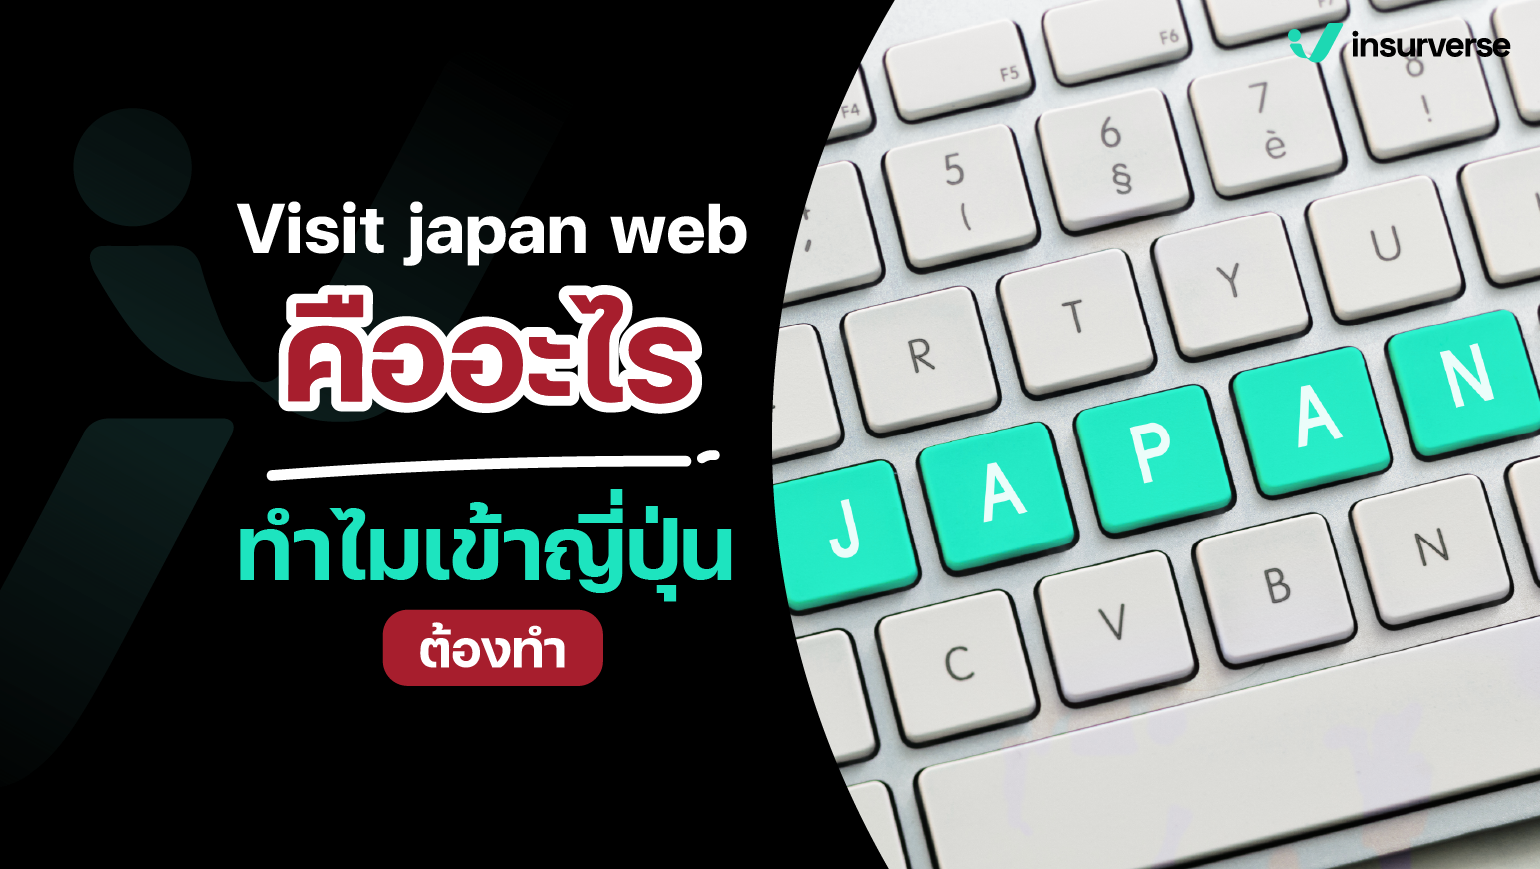 เผยเคล็ดลับเข้าญี่ปุ่นง่ายมาก! visit japan web คืออะไร ทำไมเข้าญี่ปุ่นต้องทำ